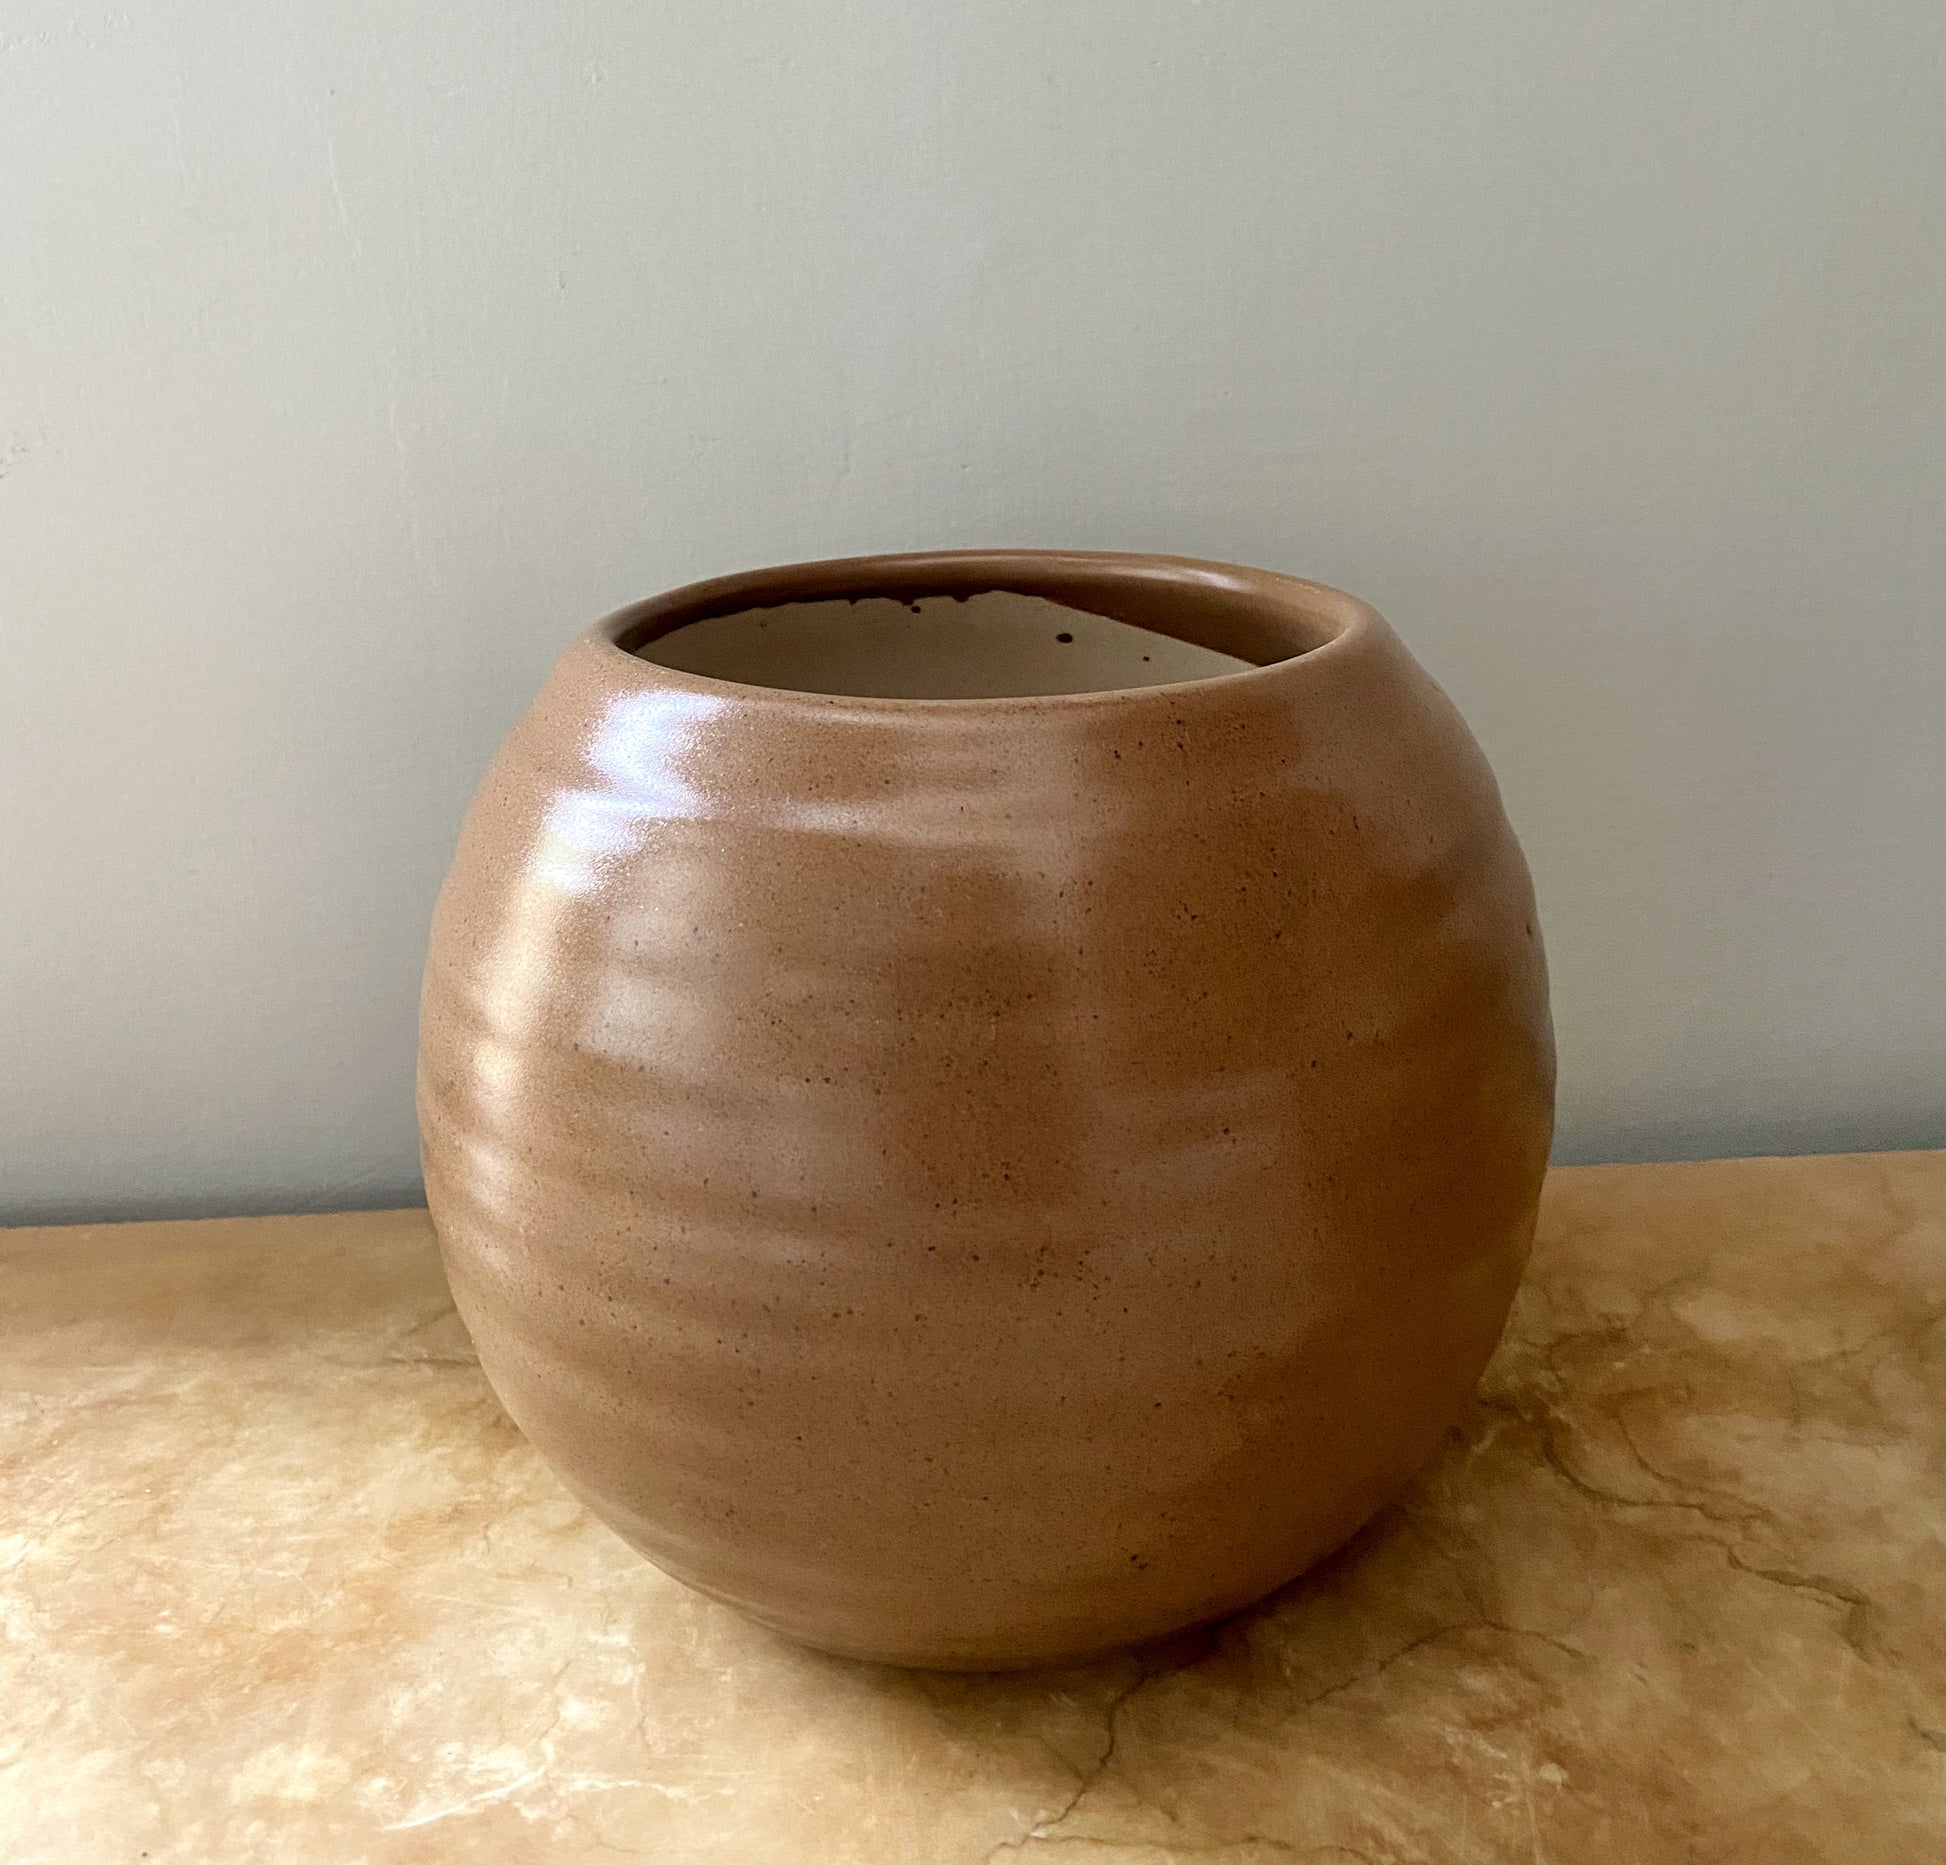 round pot, circular ceramic planter, unique textured pot, brown